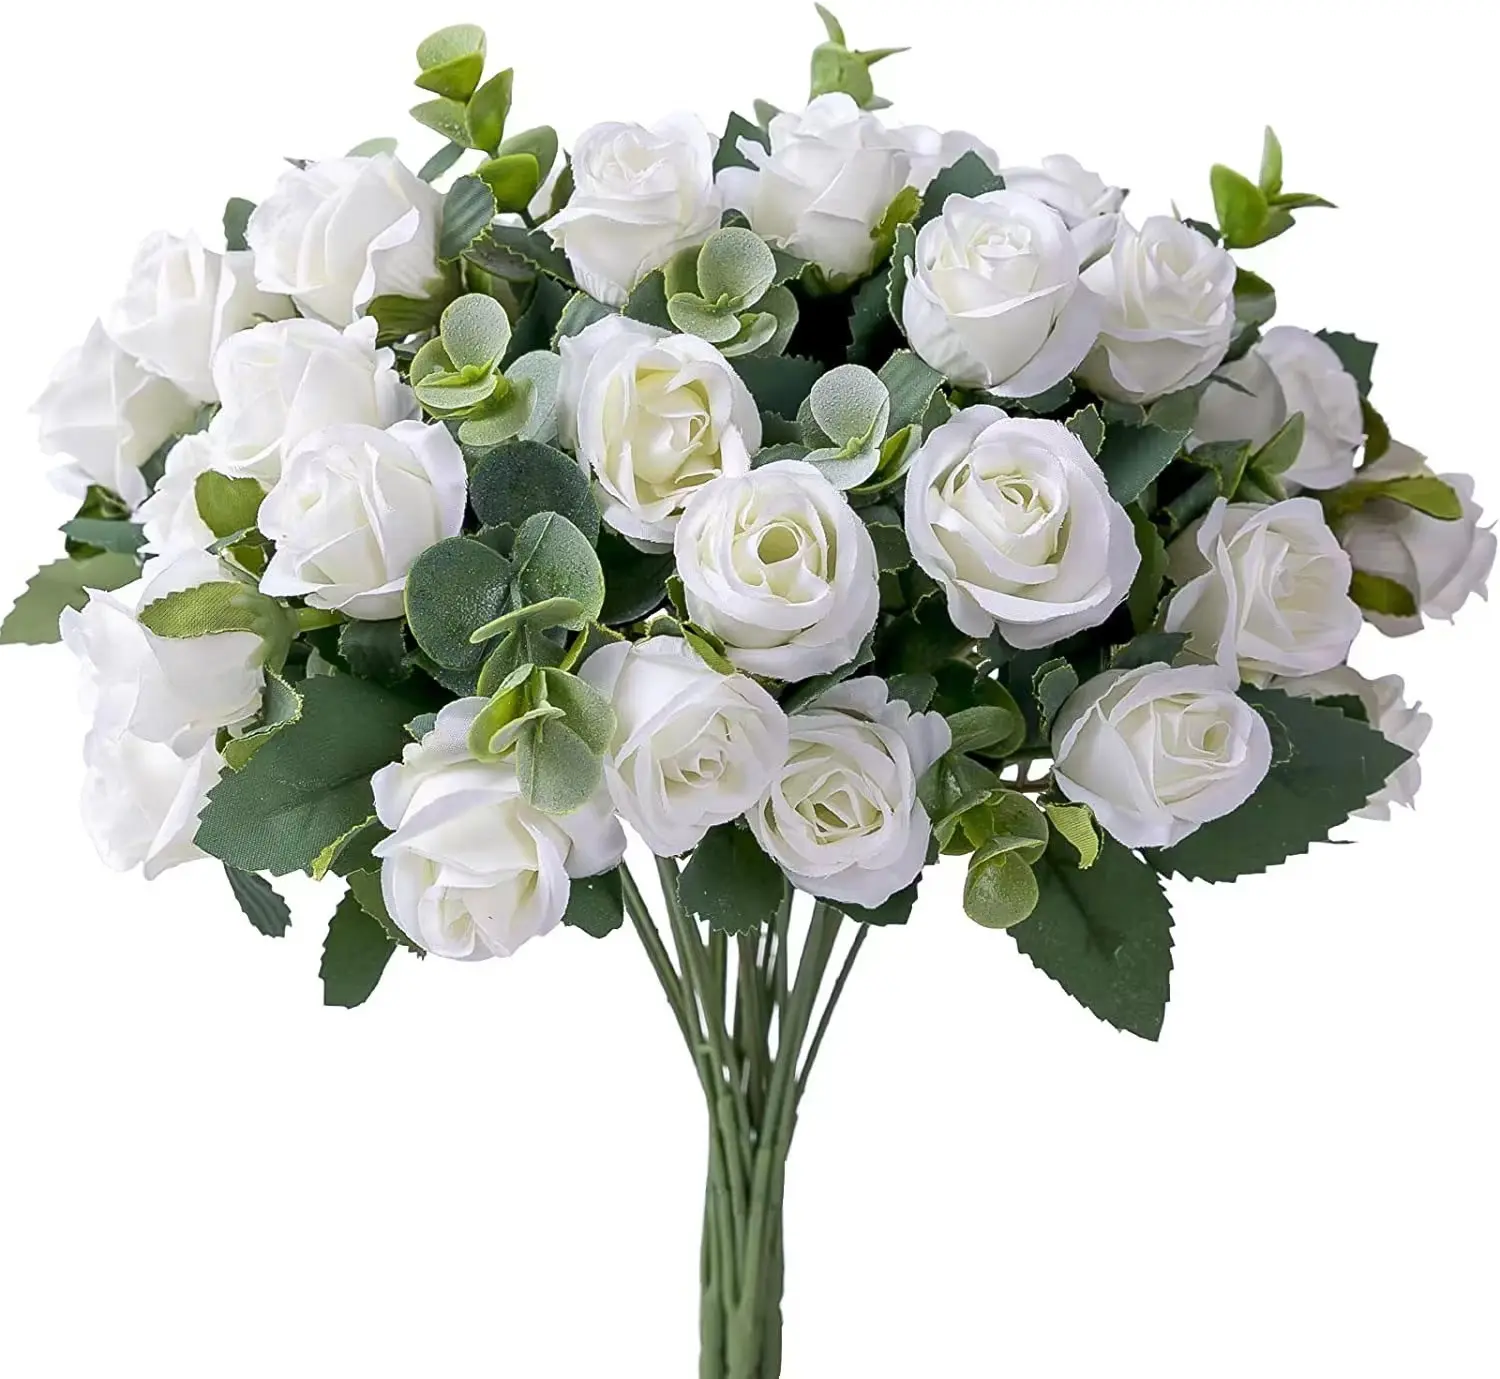 Sen Masine feuille d'eucalyptus 10 tête soie artificielle rose fleur bouquet pour Vase Arrangements floraux mariage maison Table décor